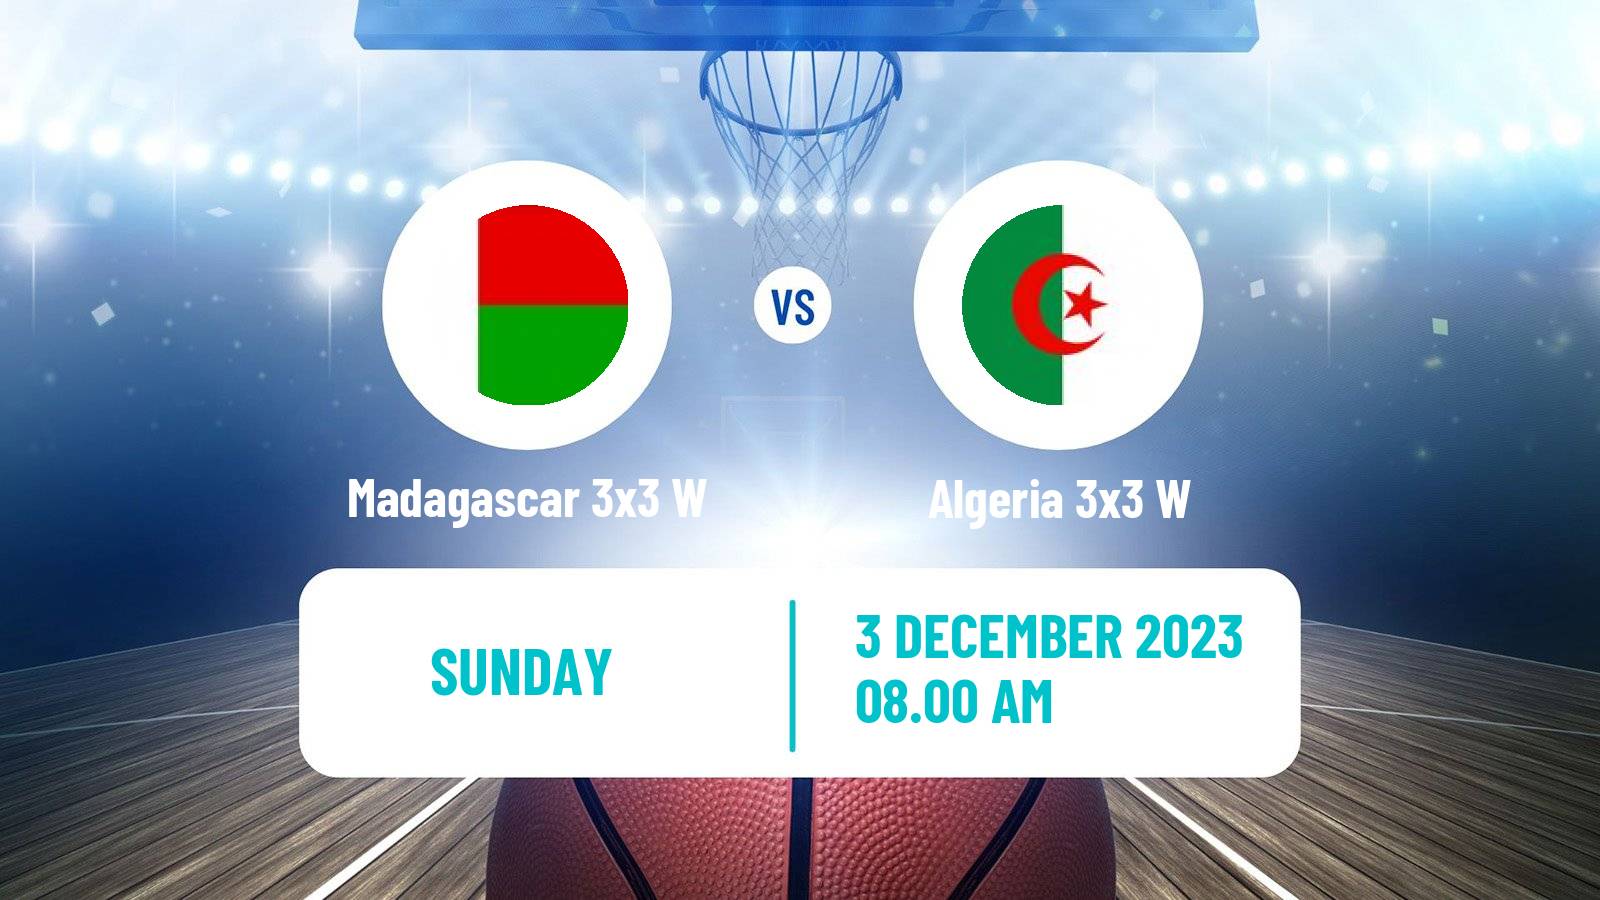 Basketball Africa Cup 3x3 Women Madagascar 3x3 W - Algeria 3x3 W